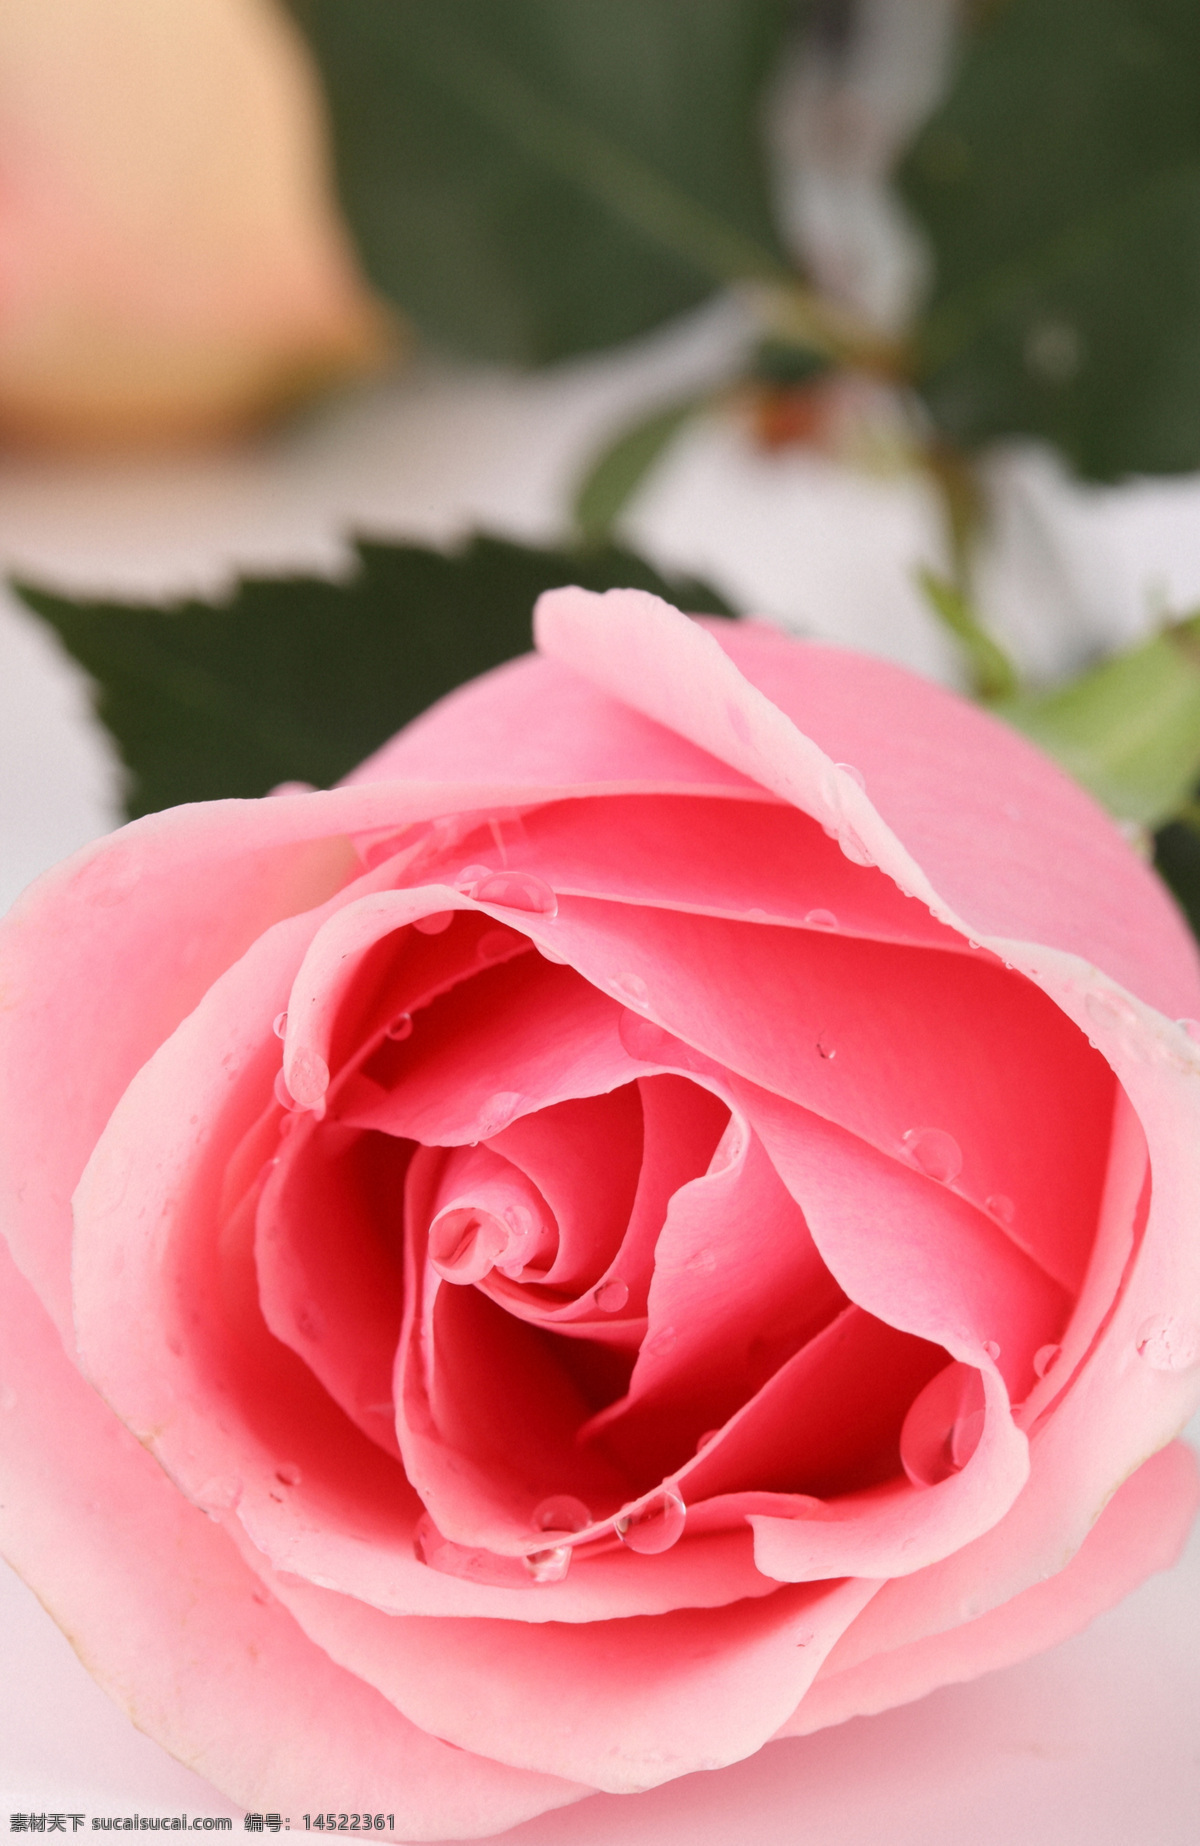 粉 玫瑰 粉玫瑰 露珠 水珠 玫瑰花 美丽鲜花 漂亮花朵 花卉 鲜花摄影 花草树木 生物世界